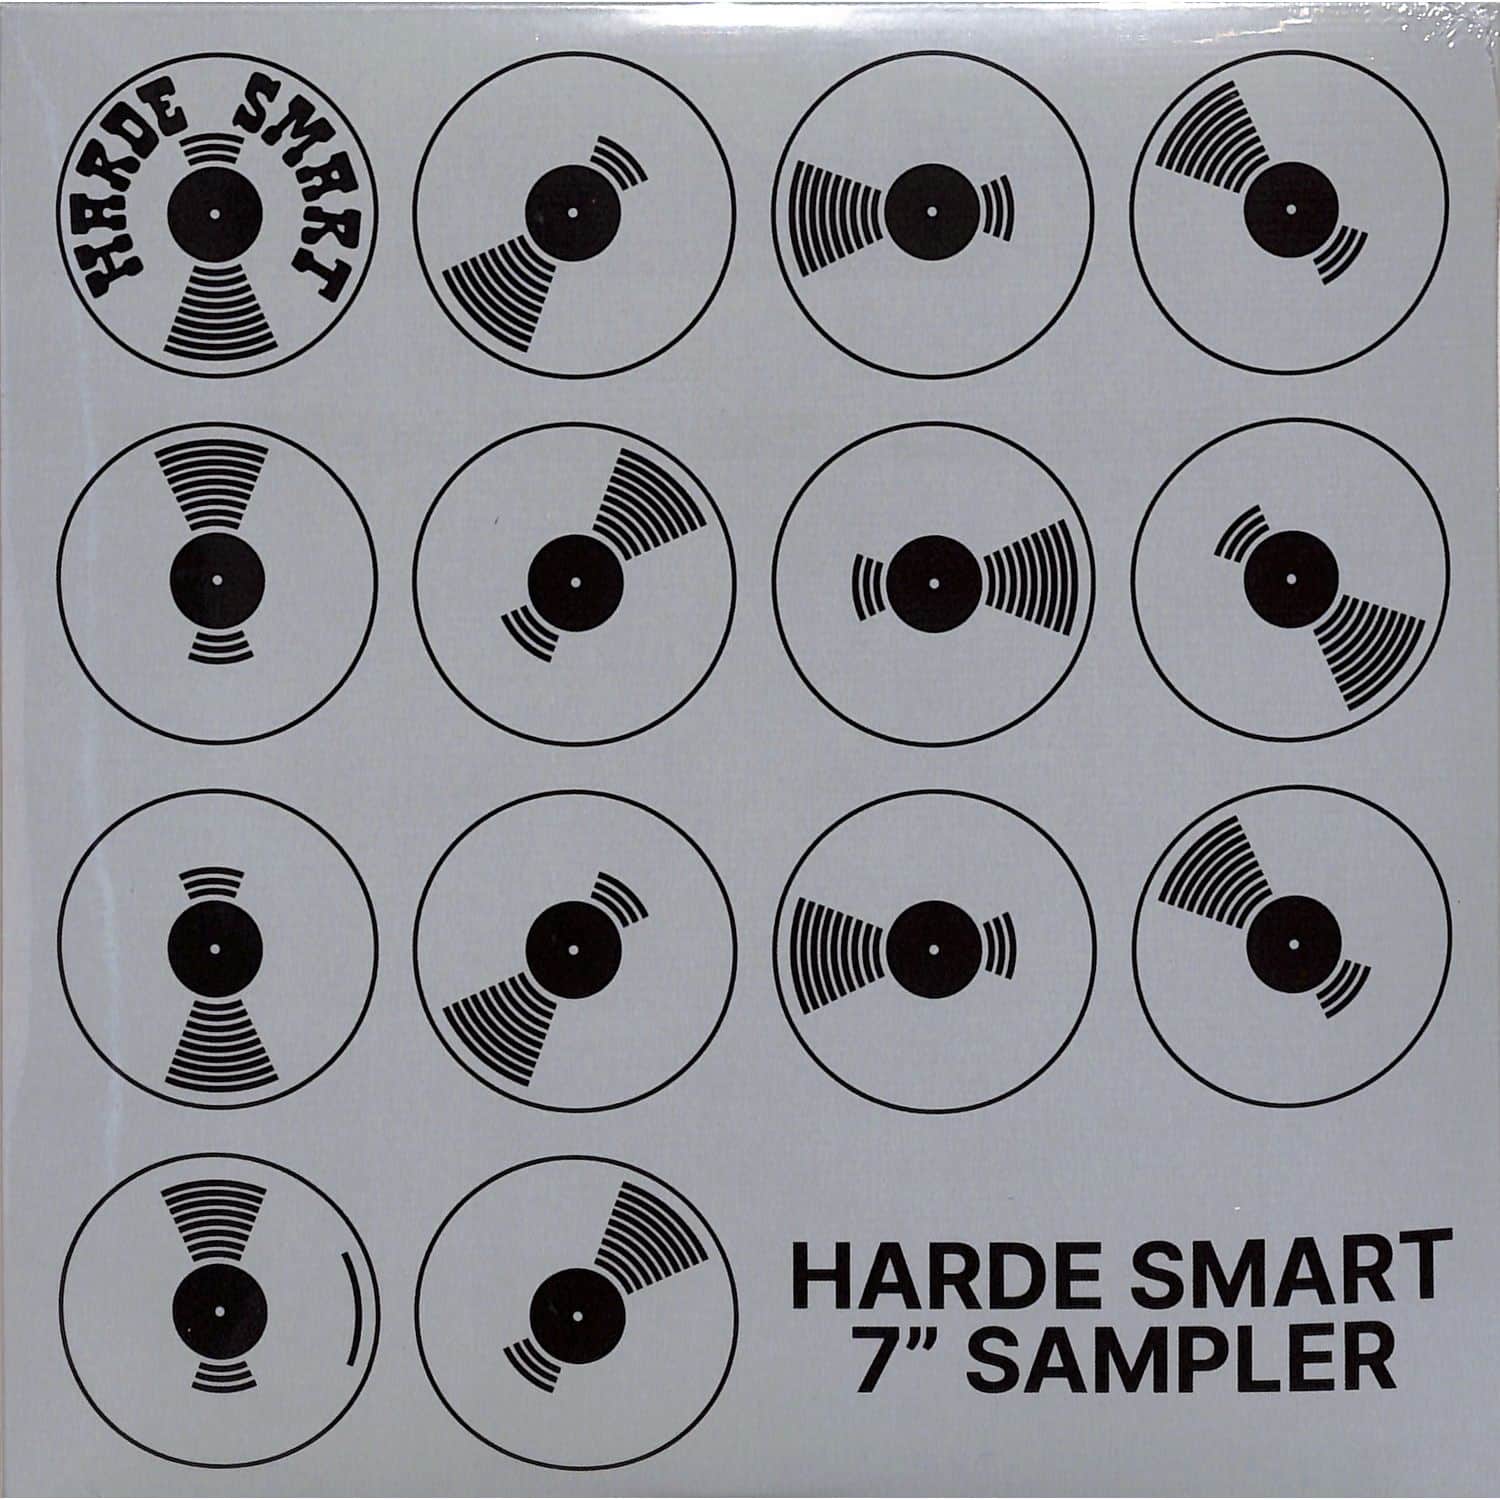 Rob Glotzbach / Joost Belinfante - HARDE SMART VOLUME 2 SAMPLER 